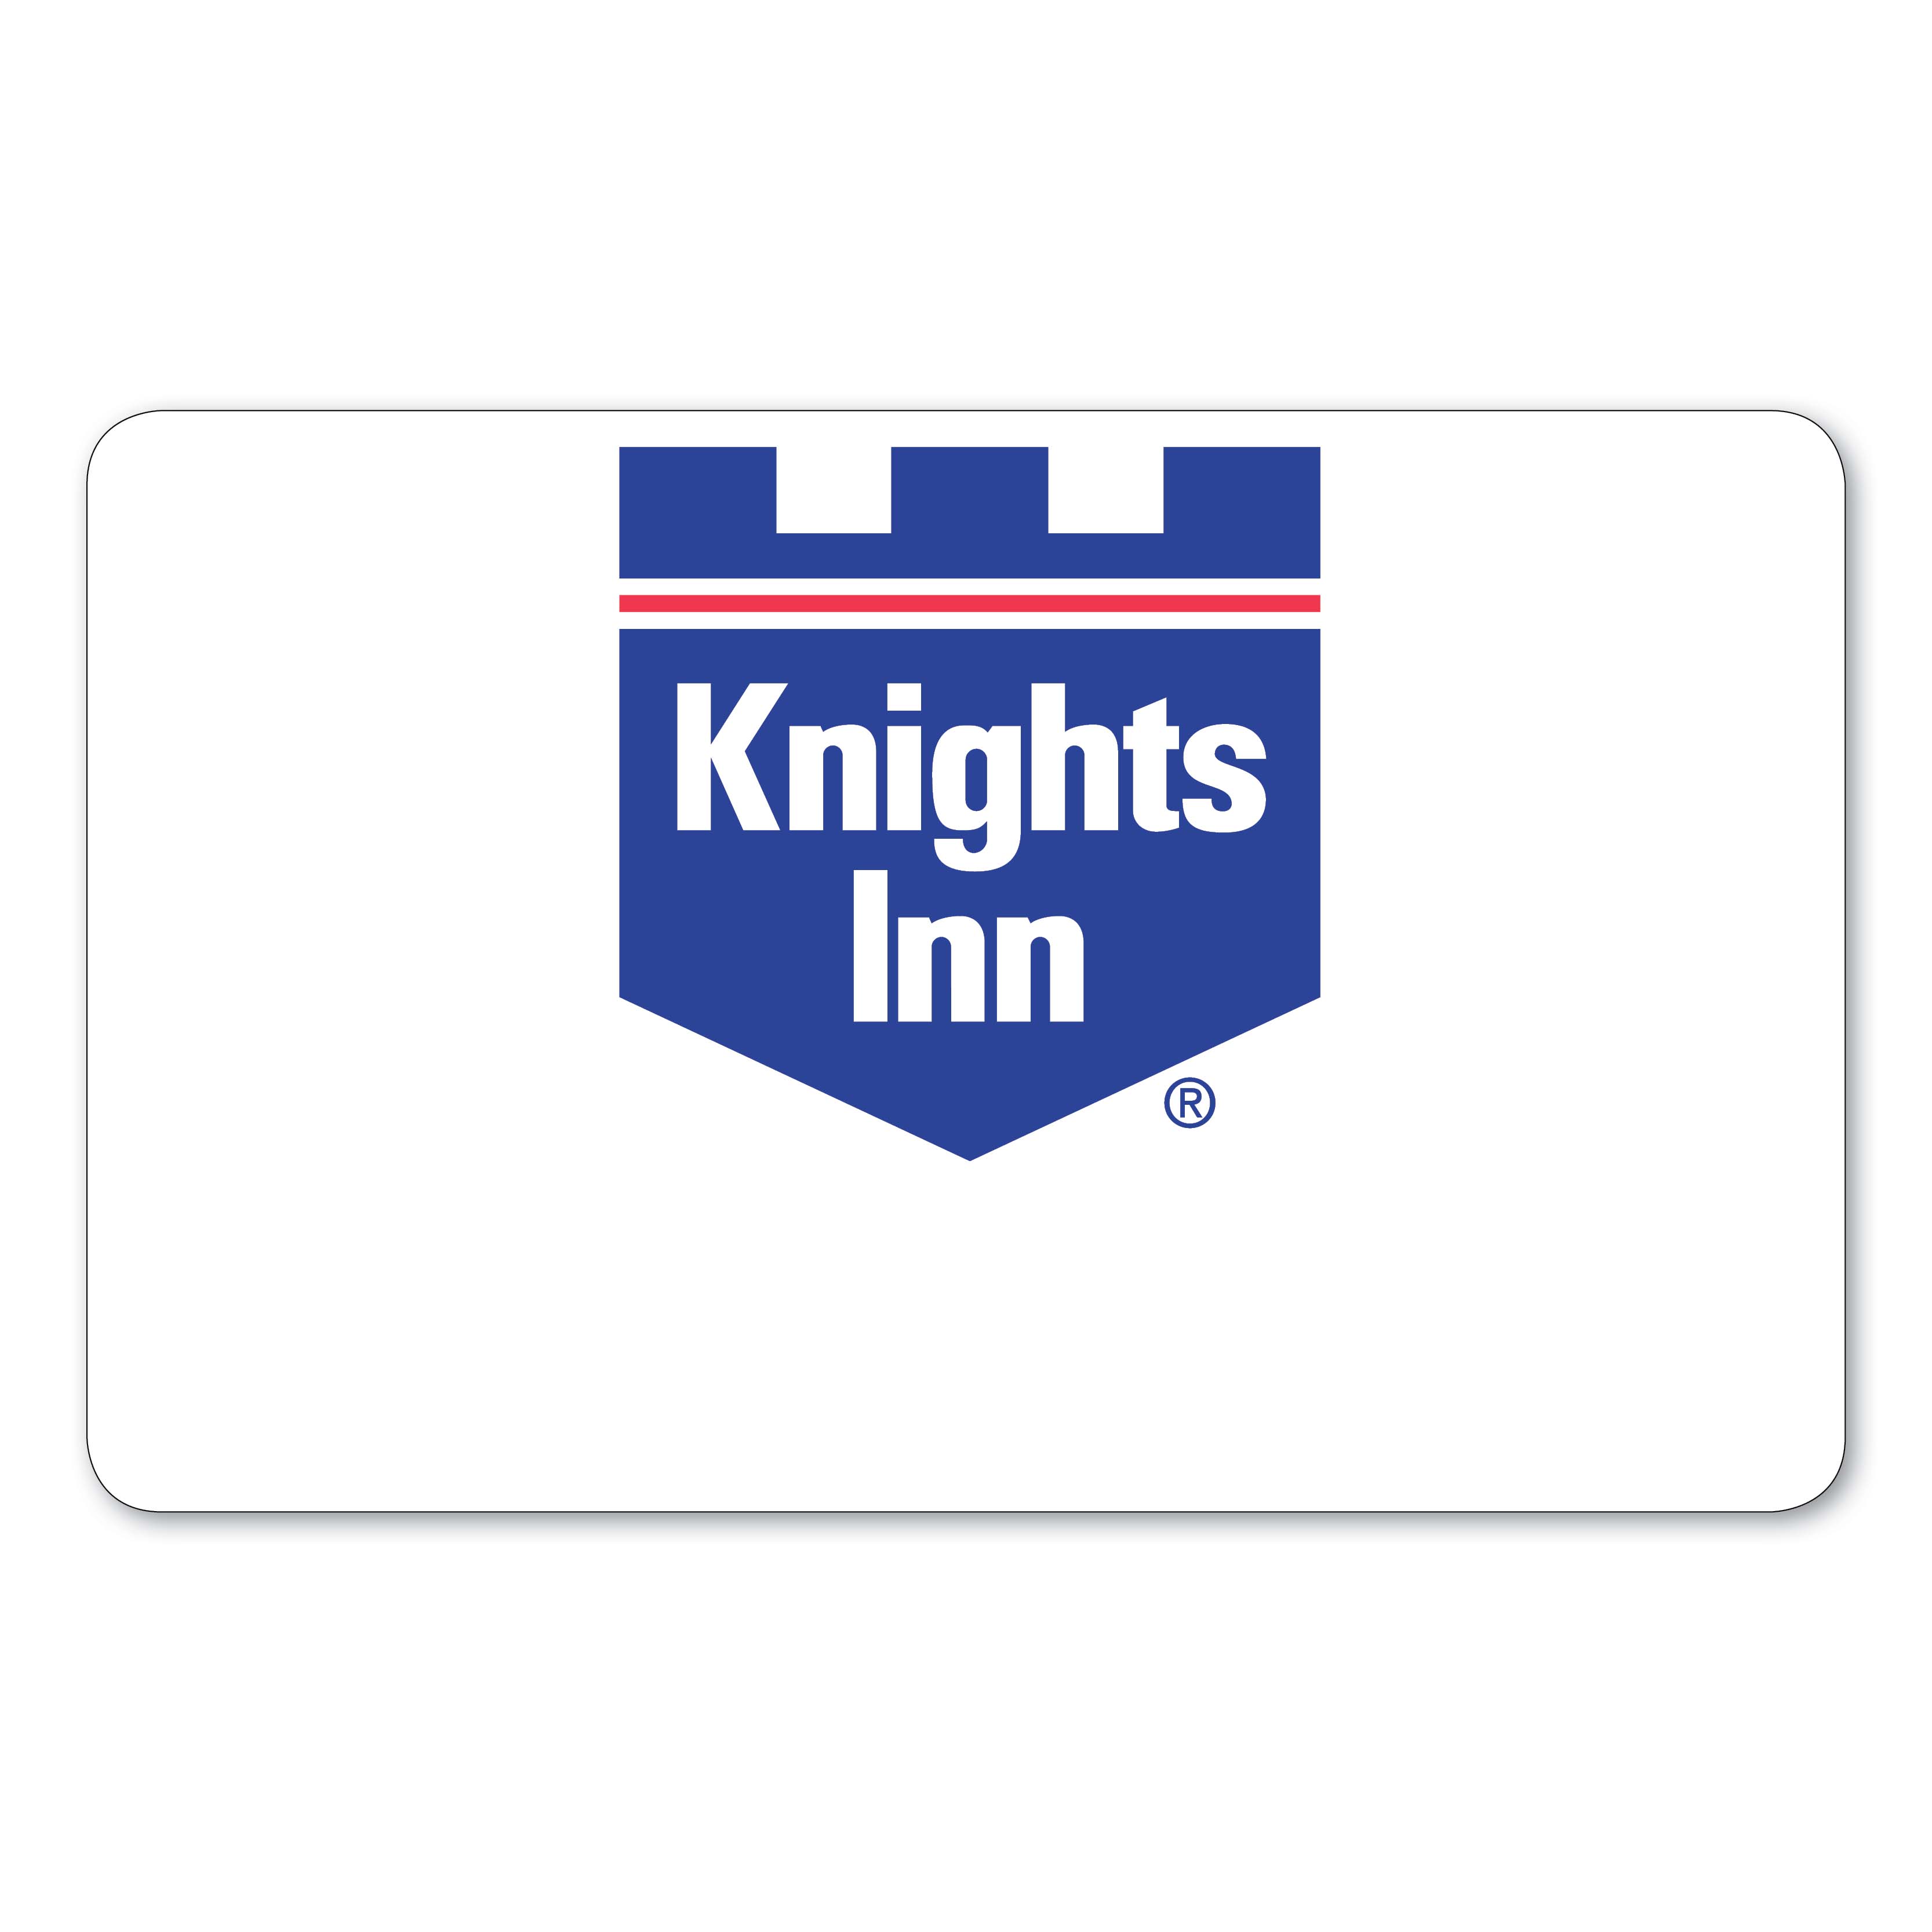 Knights Inn Hotel Key Card